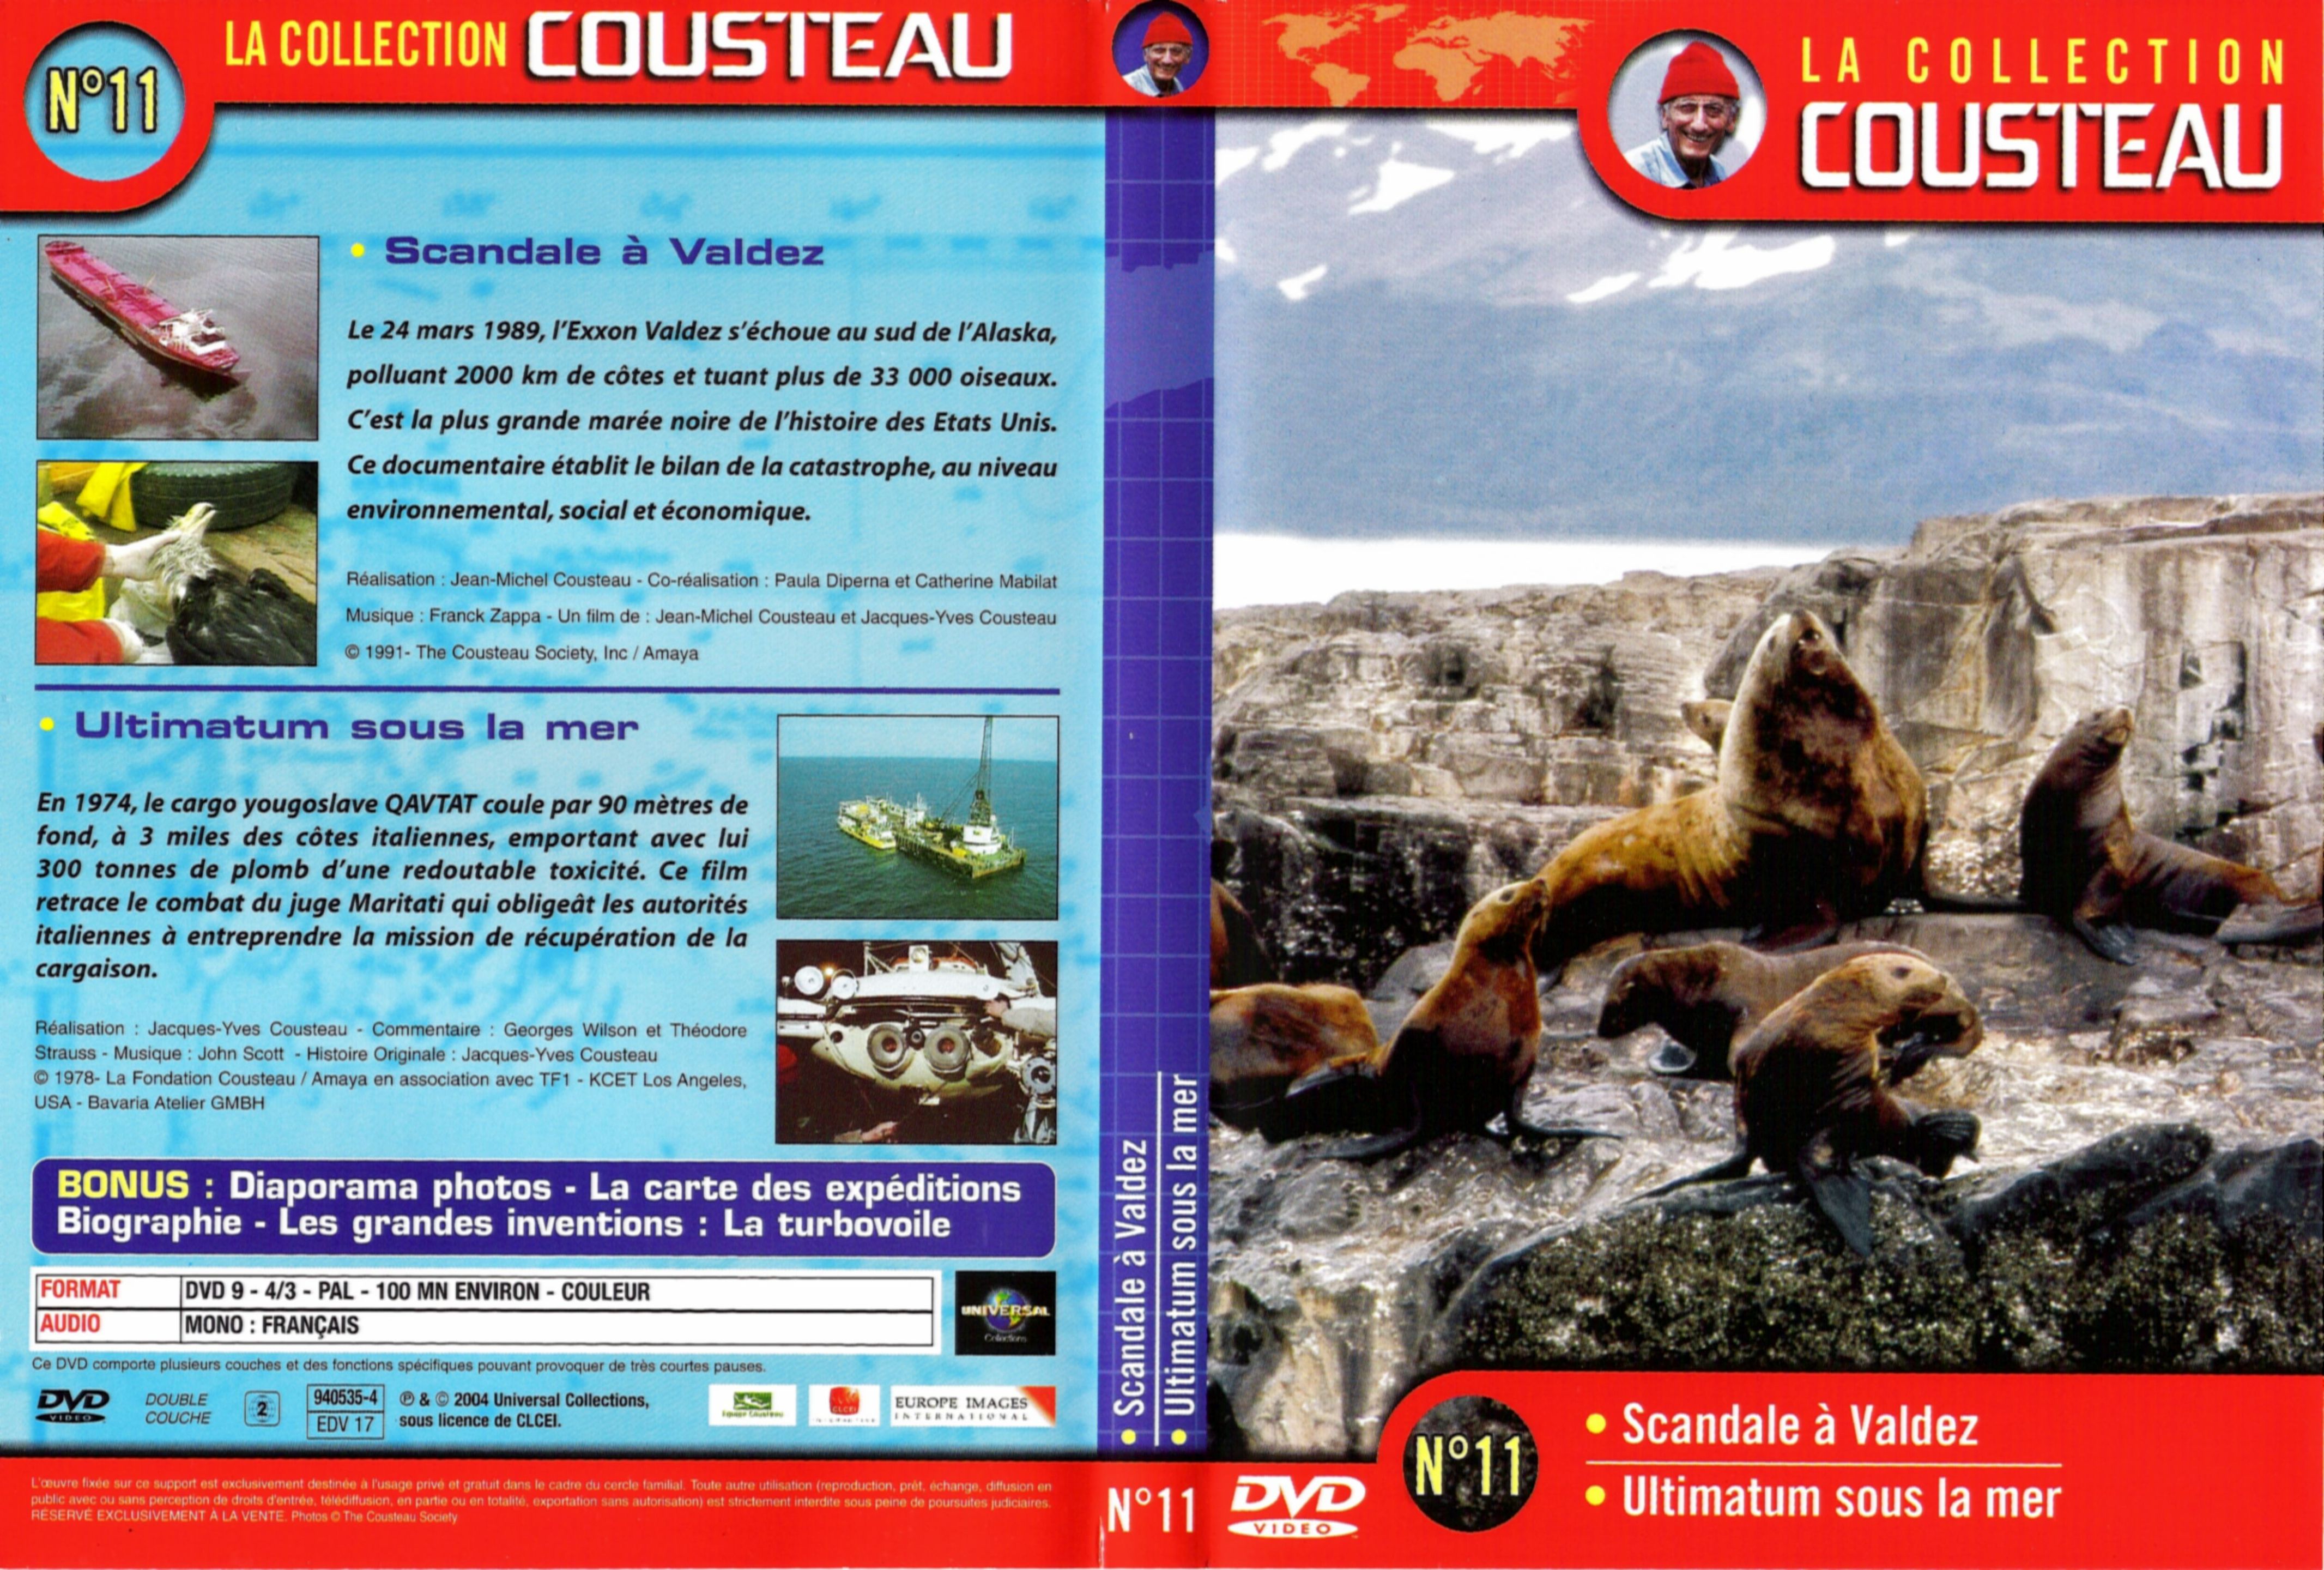 Jaquette DVD Cousteau Collection vol 11